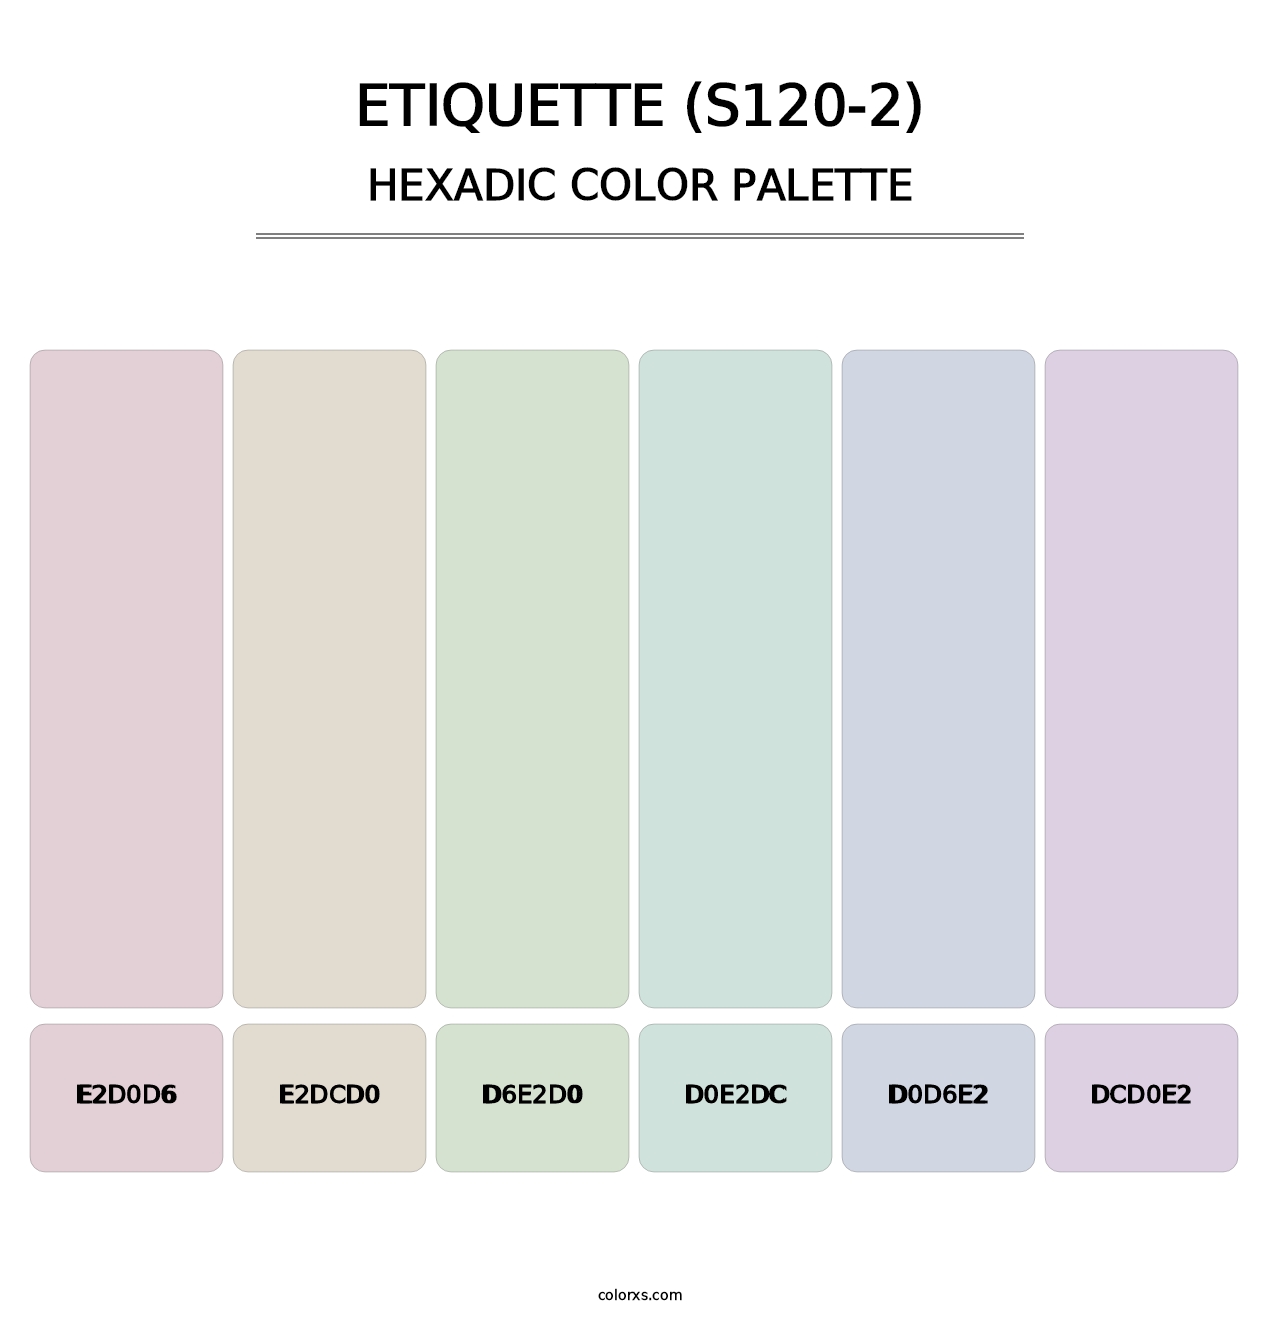 Etiquette (S120-2) - Hexadic Color Palette